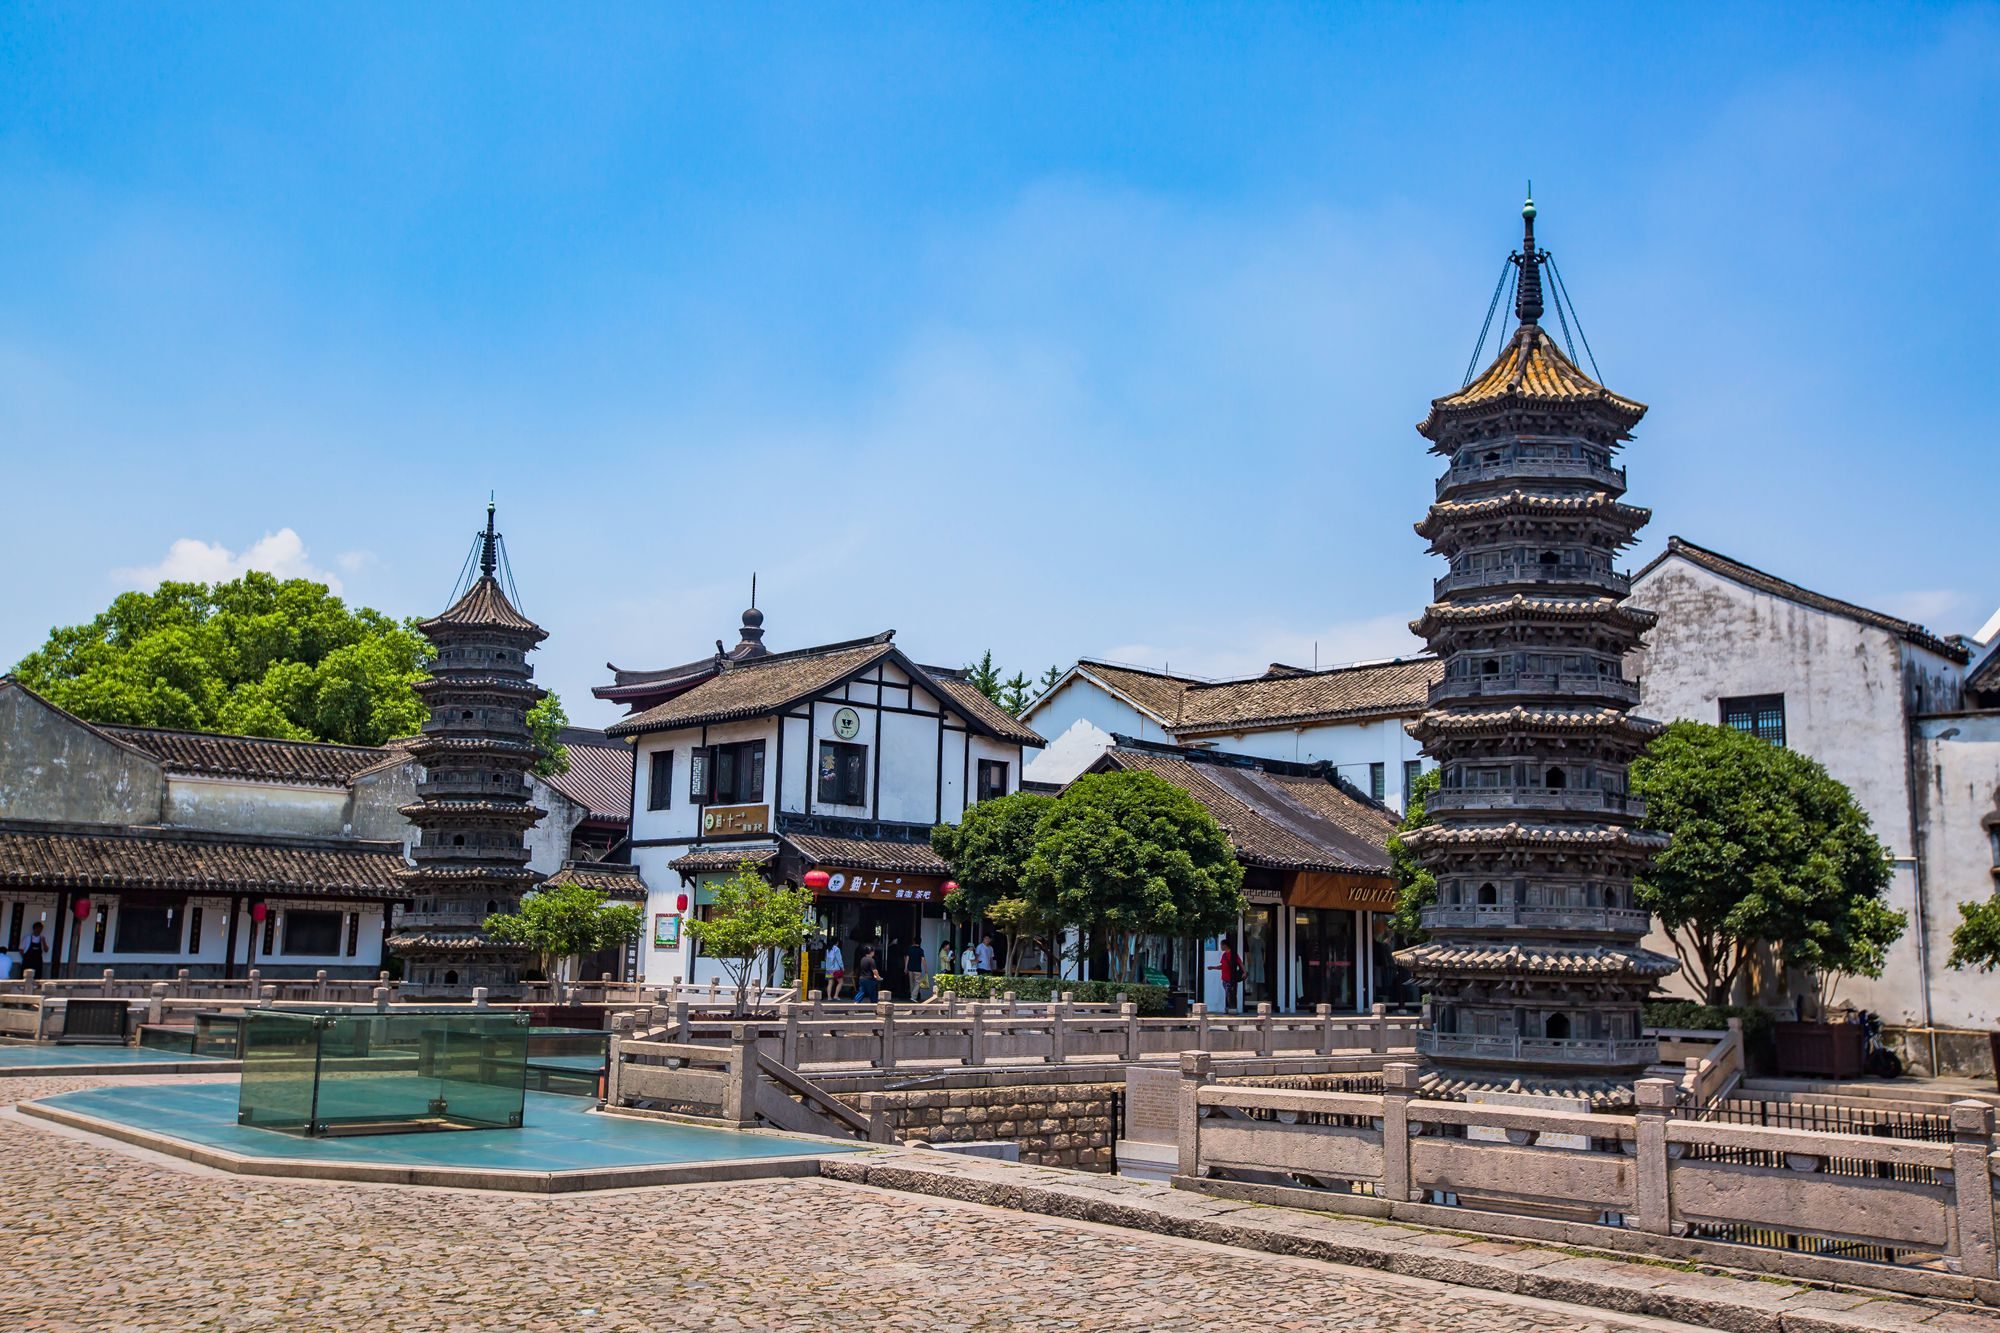 上海南翔古镇,魔都四大古镇之一,小巧精美,已有上千年的历史